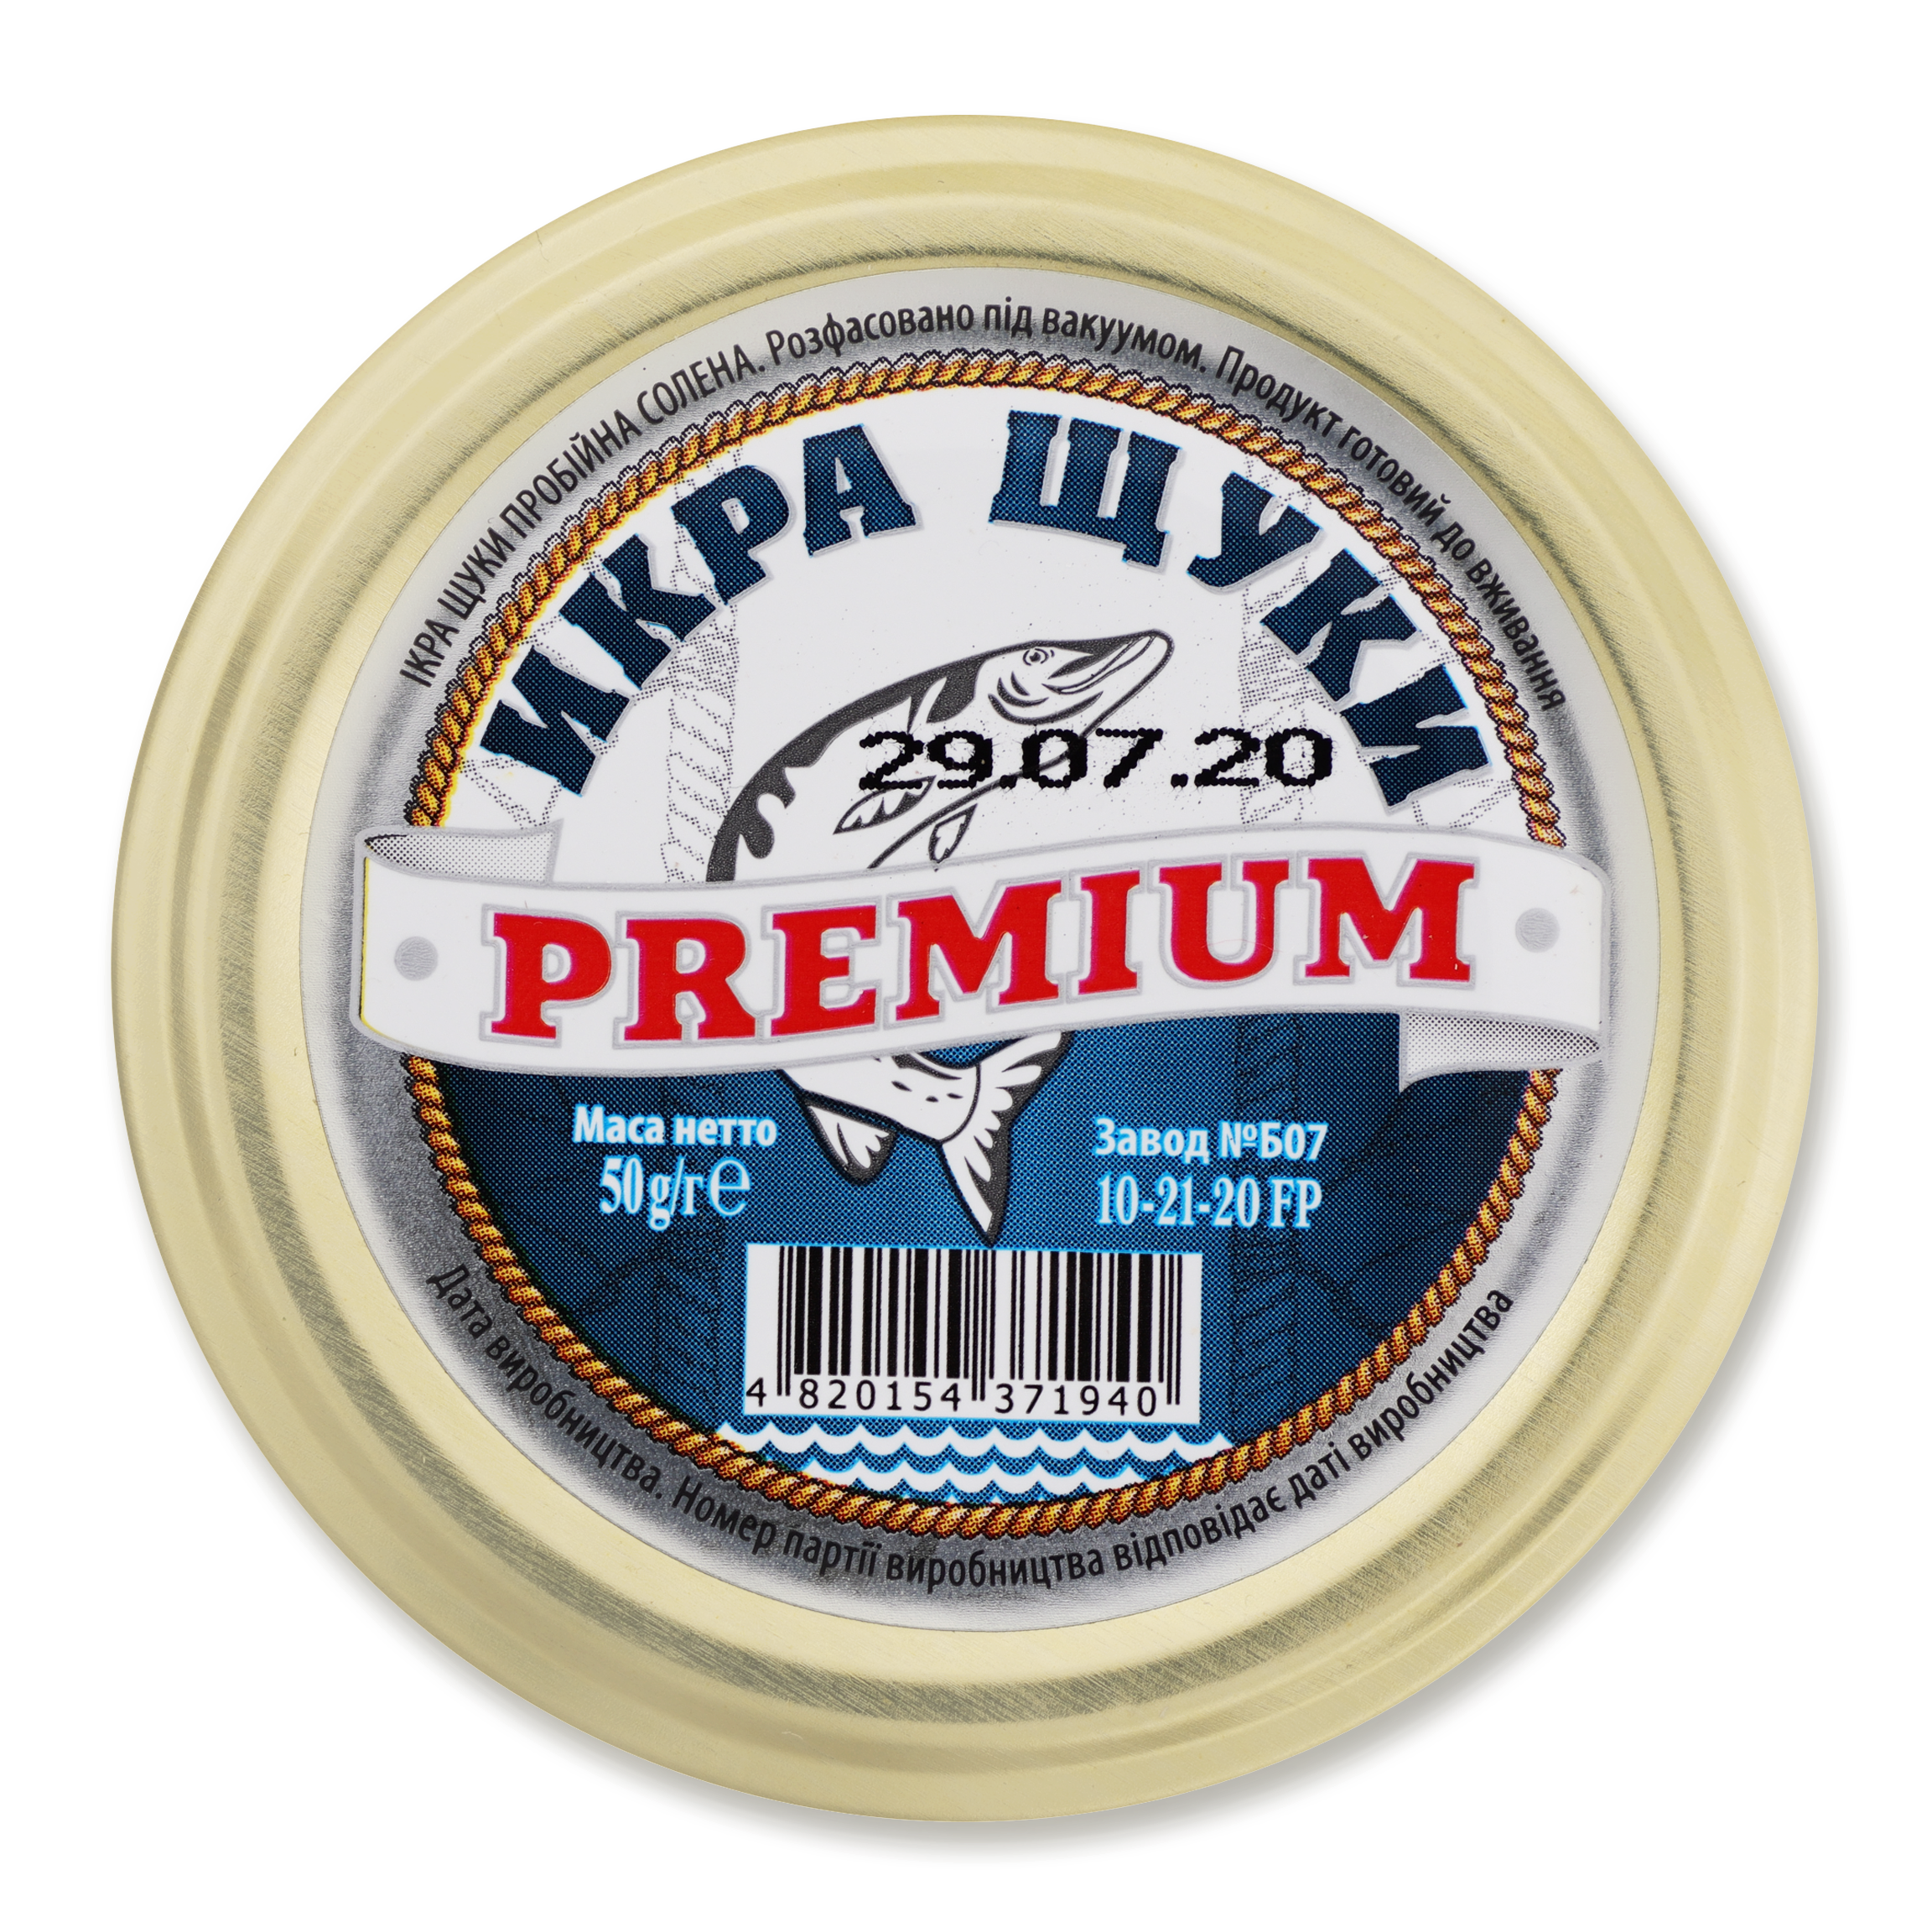 Pike Caviar Premium 50g